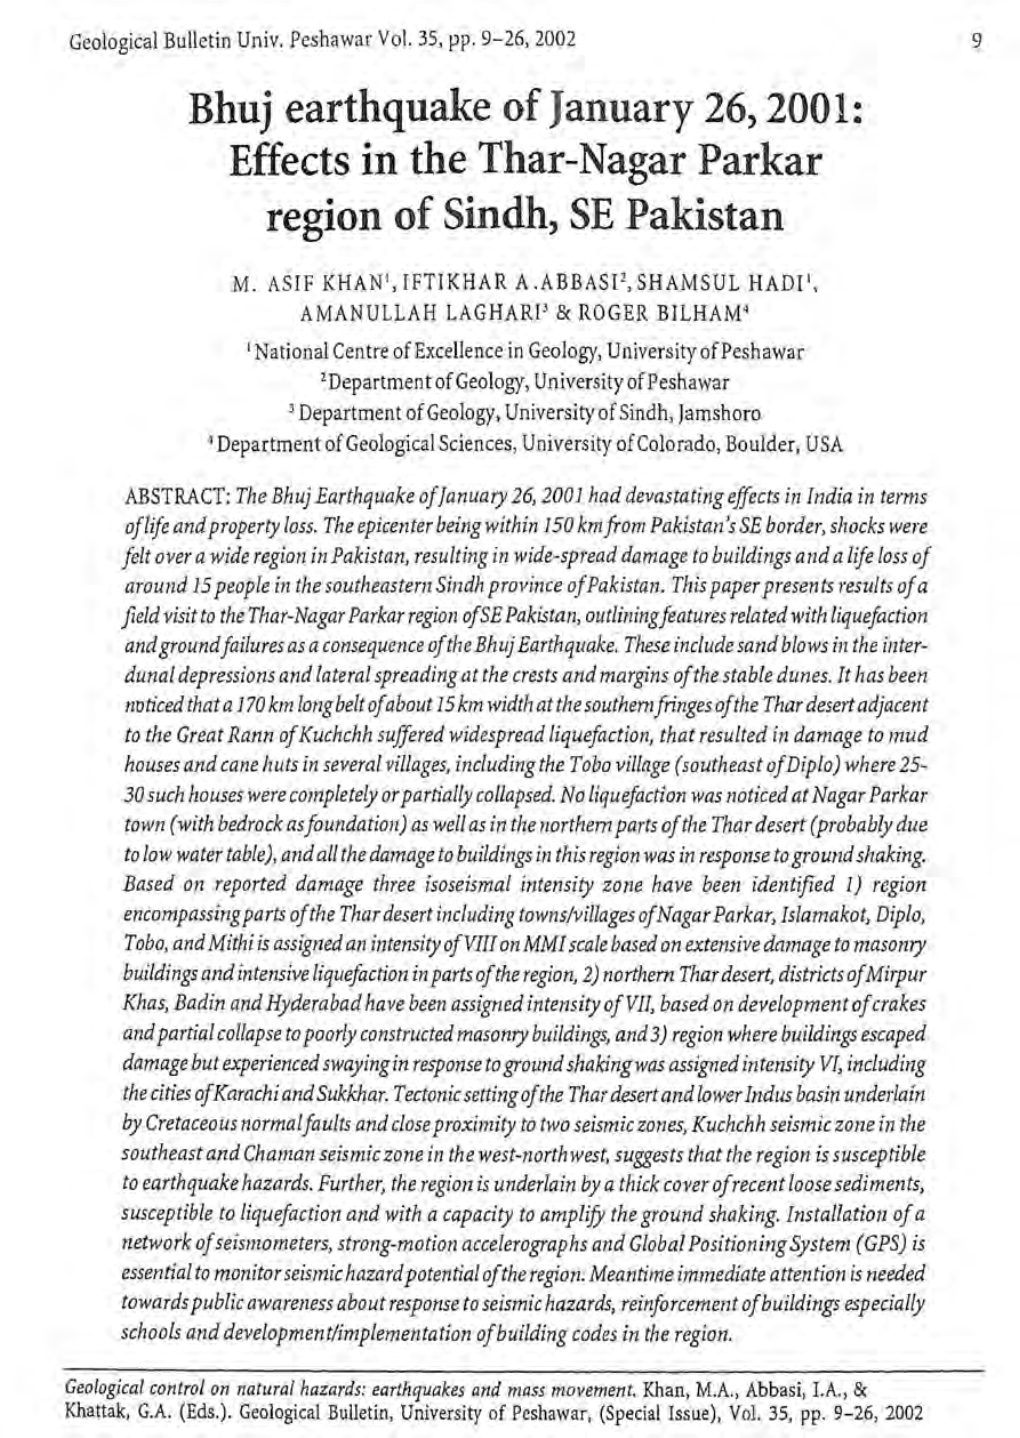 Geological Bulletin Univ. Peshawar Vol. 35, Pp. 9-26,2002 M. ASIF